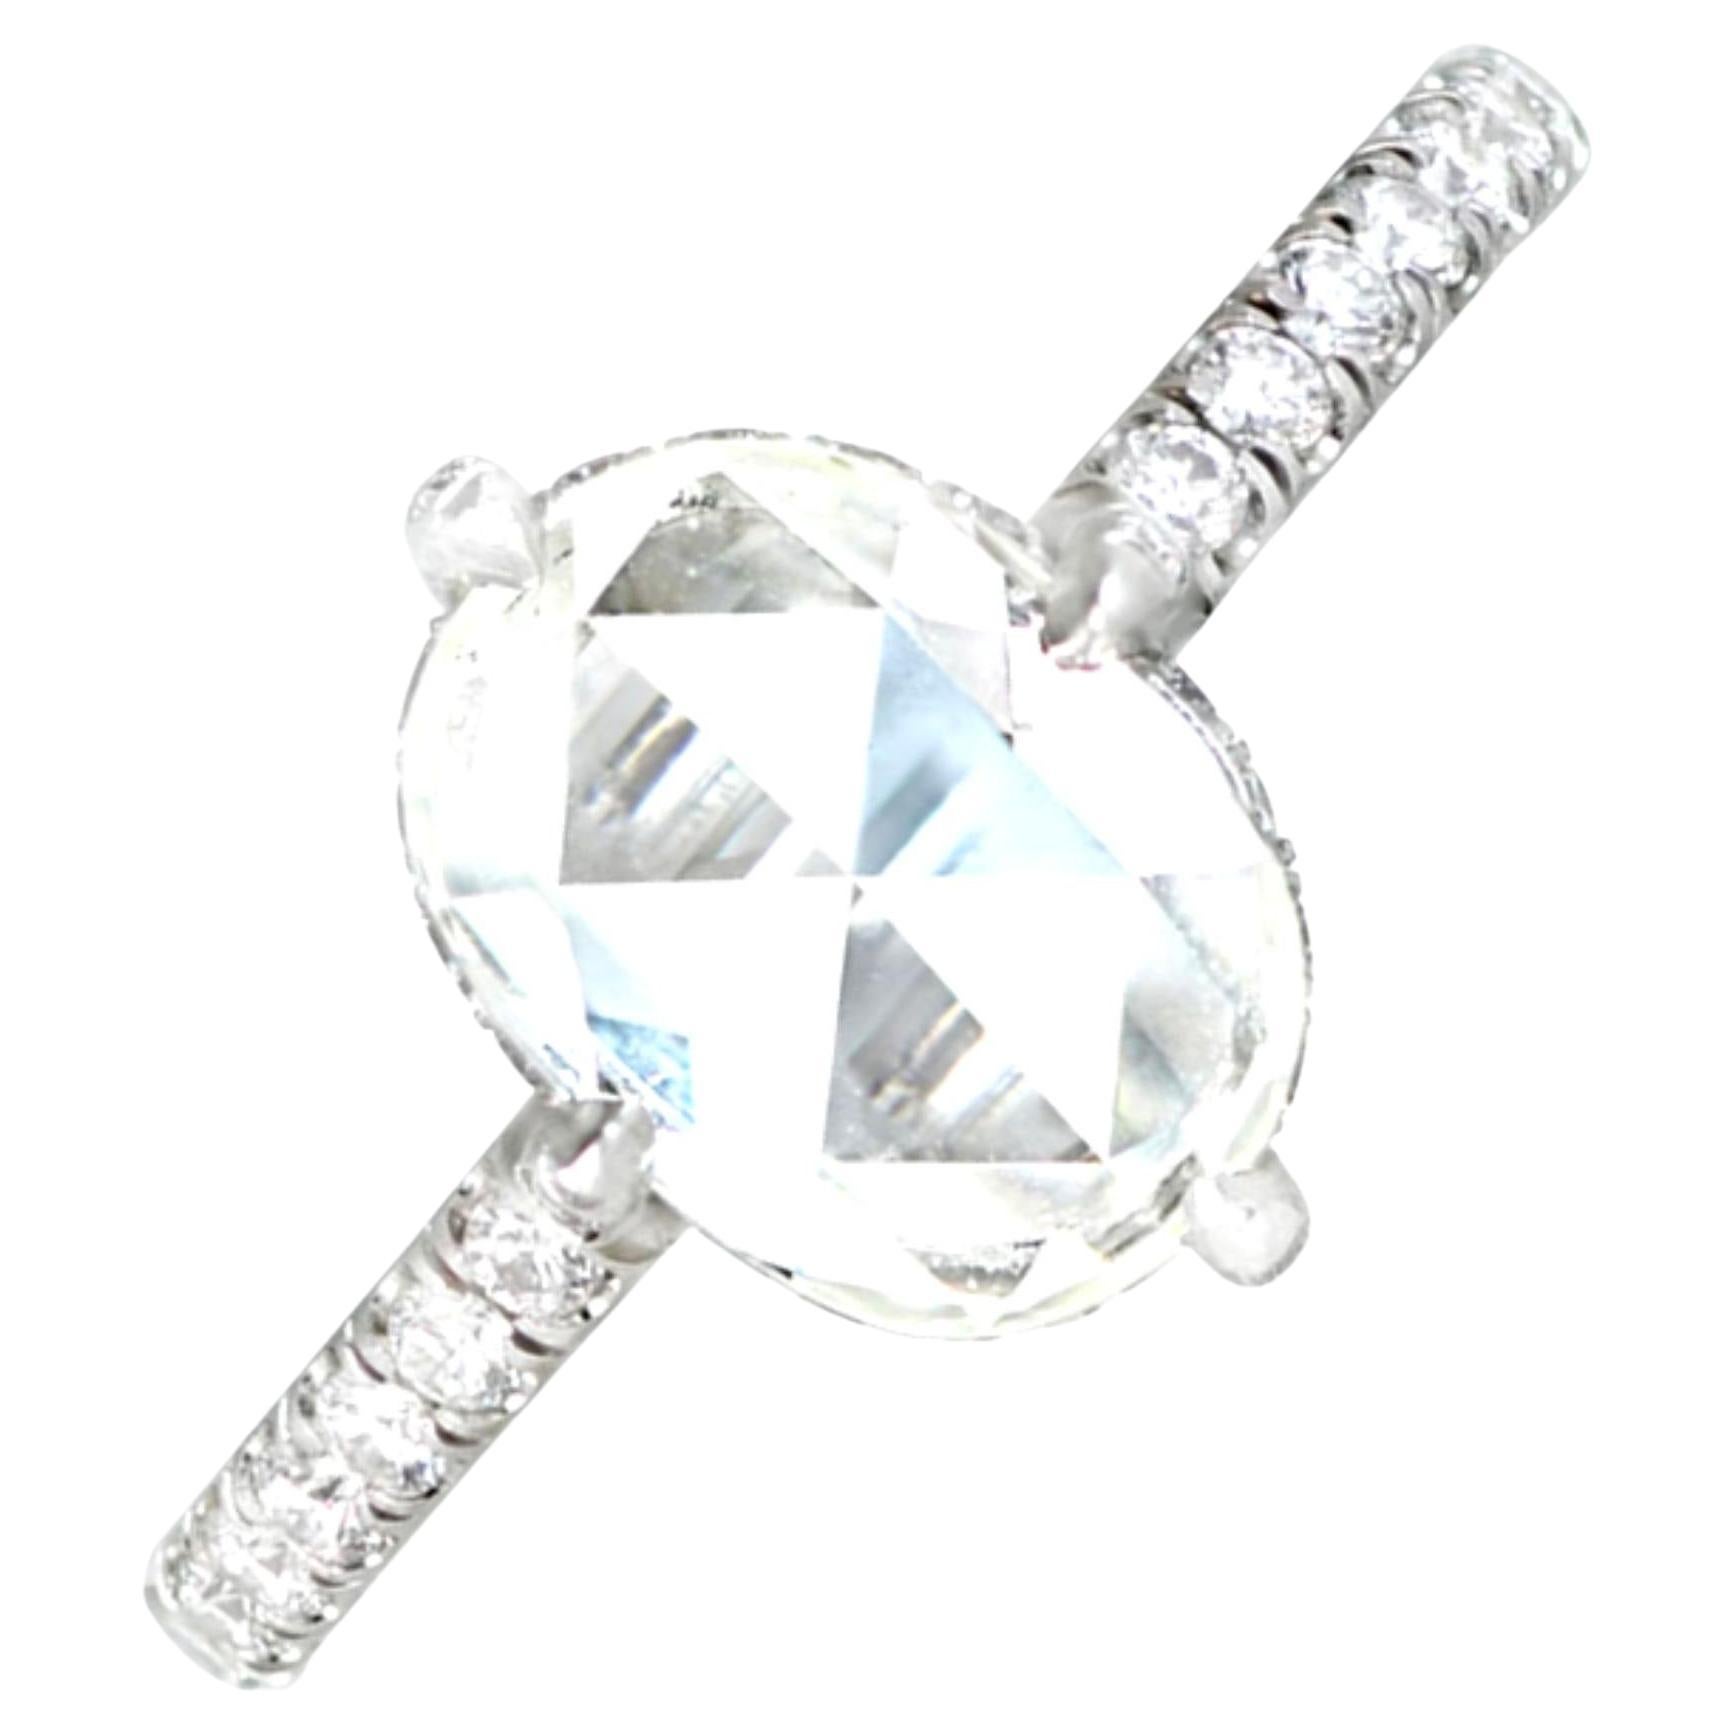 1.55 Carat Rose-Cut Diamond Engagement Ring, VS1 Clarity, Platinum